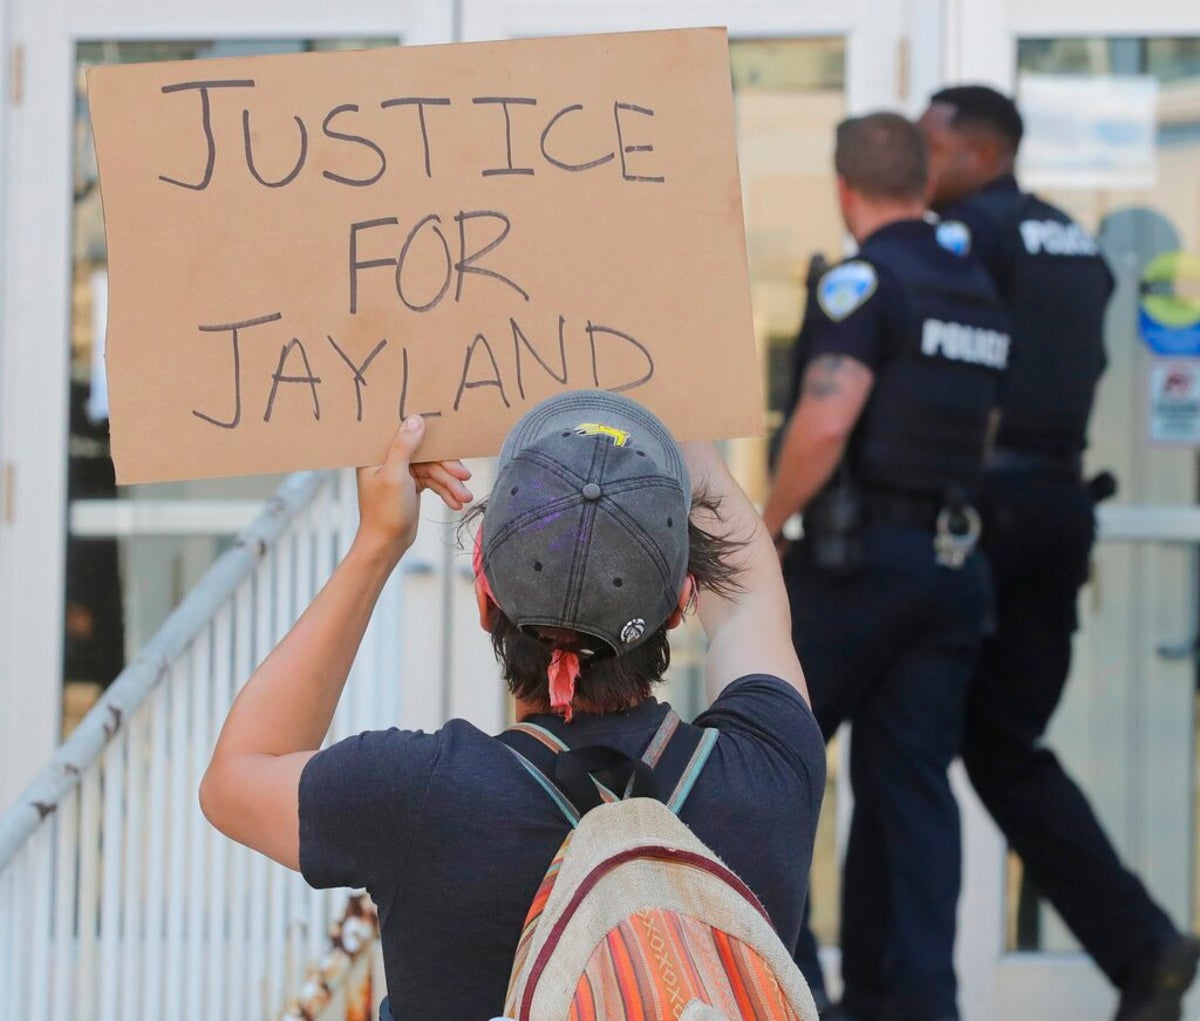 Jayland Walker: Avukat, vücut kamerası videosunun Siyah sürücünün 90 kez vurulduğunu gösterdiğini söyledi